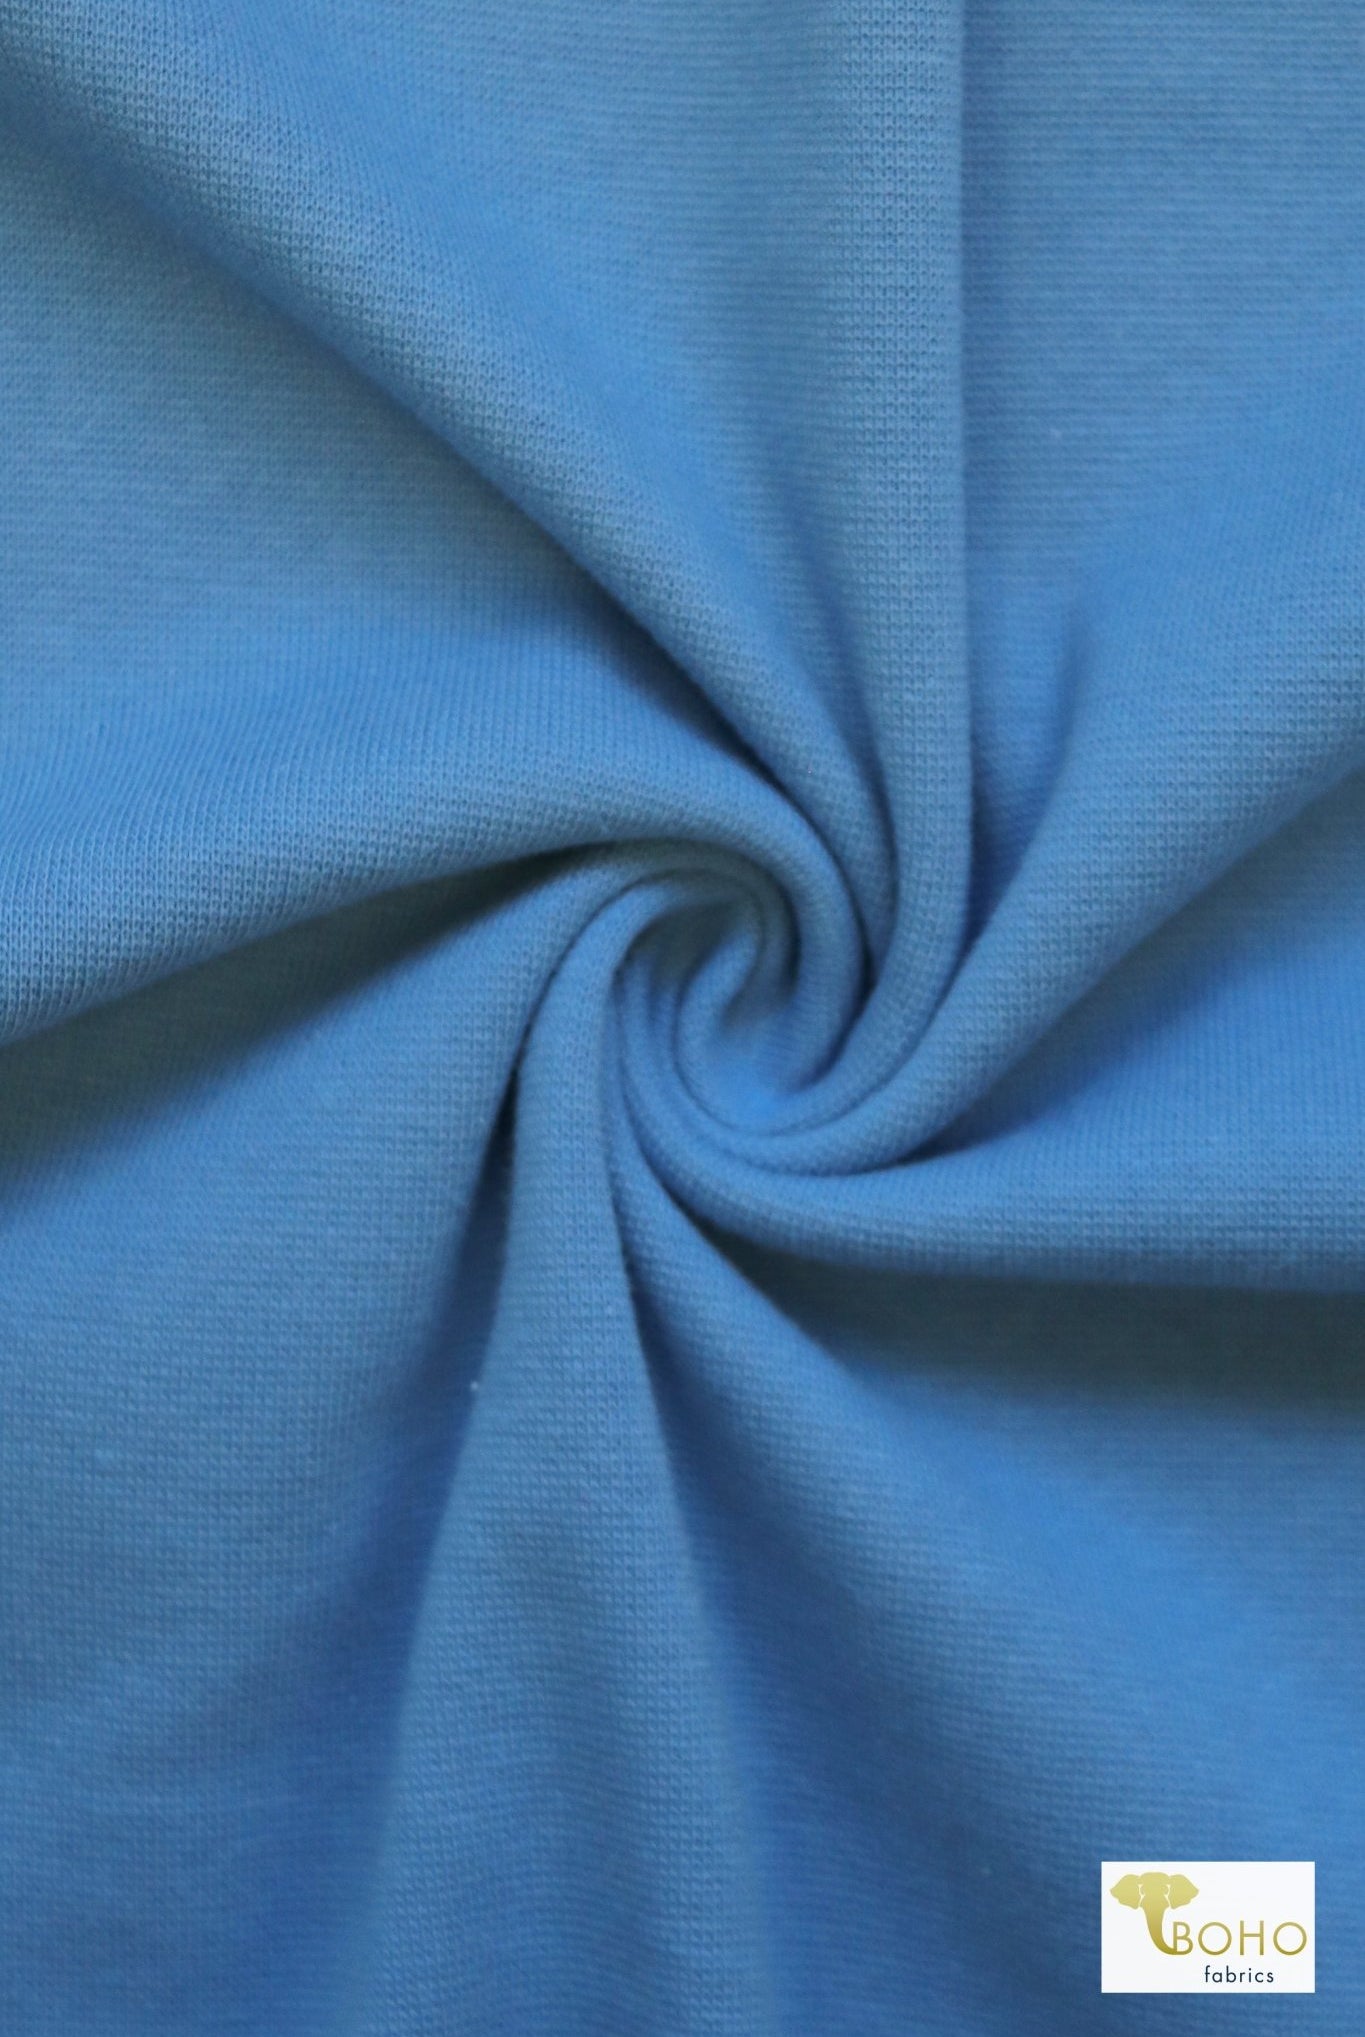 1x1 Rib Knit, Cerulean Blue. SOLD BY THE HALF YARD! - Boho Fabrics